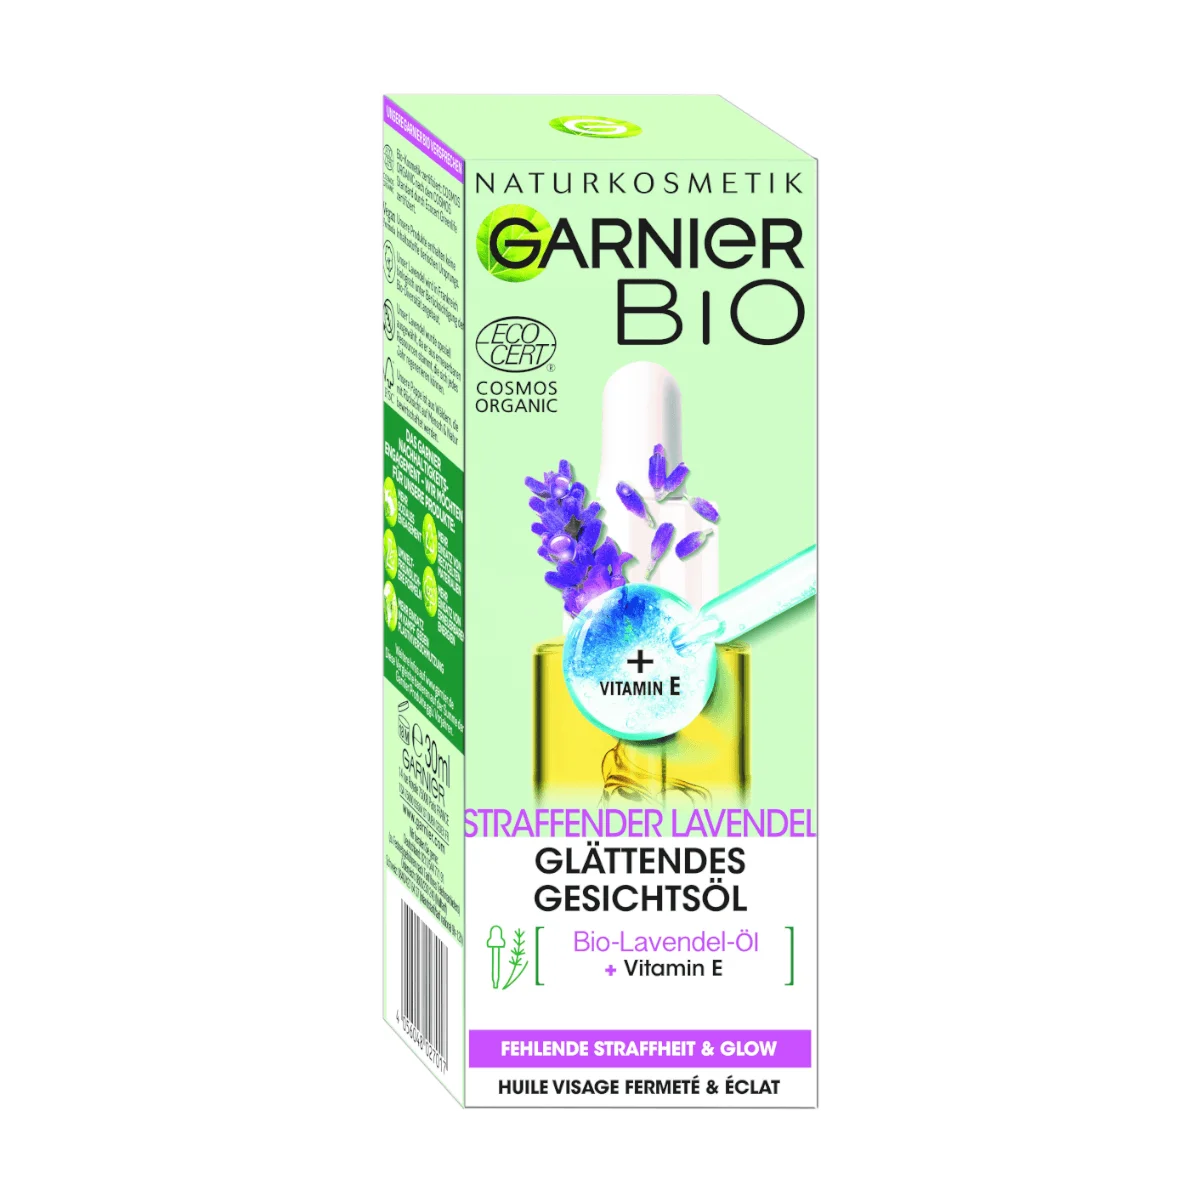 GARNIER BIO Gesichts-Öl mit straffender Lavendel, 30 ml